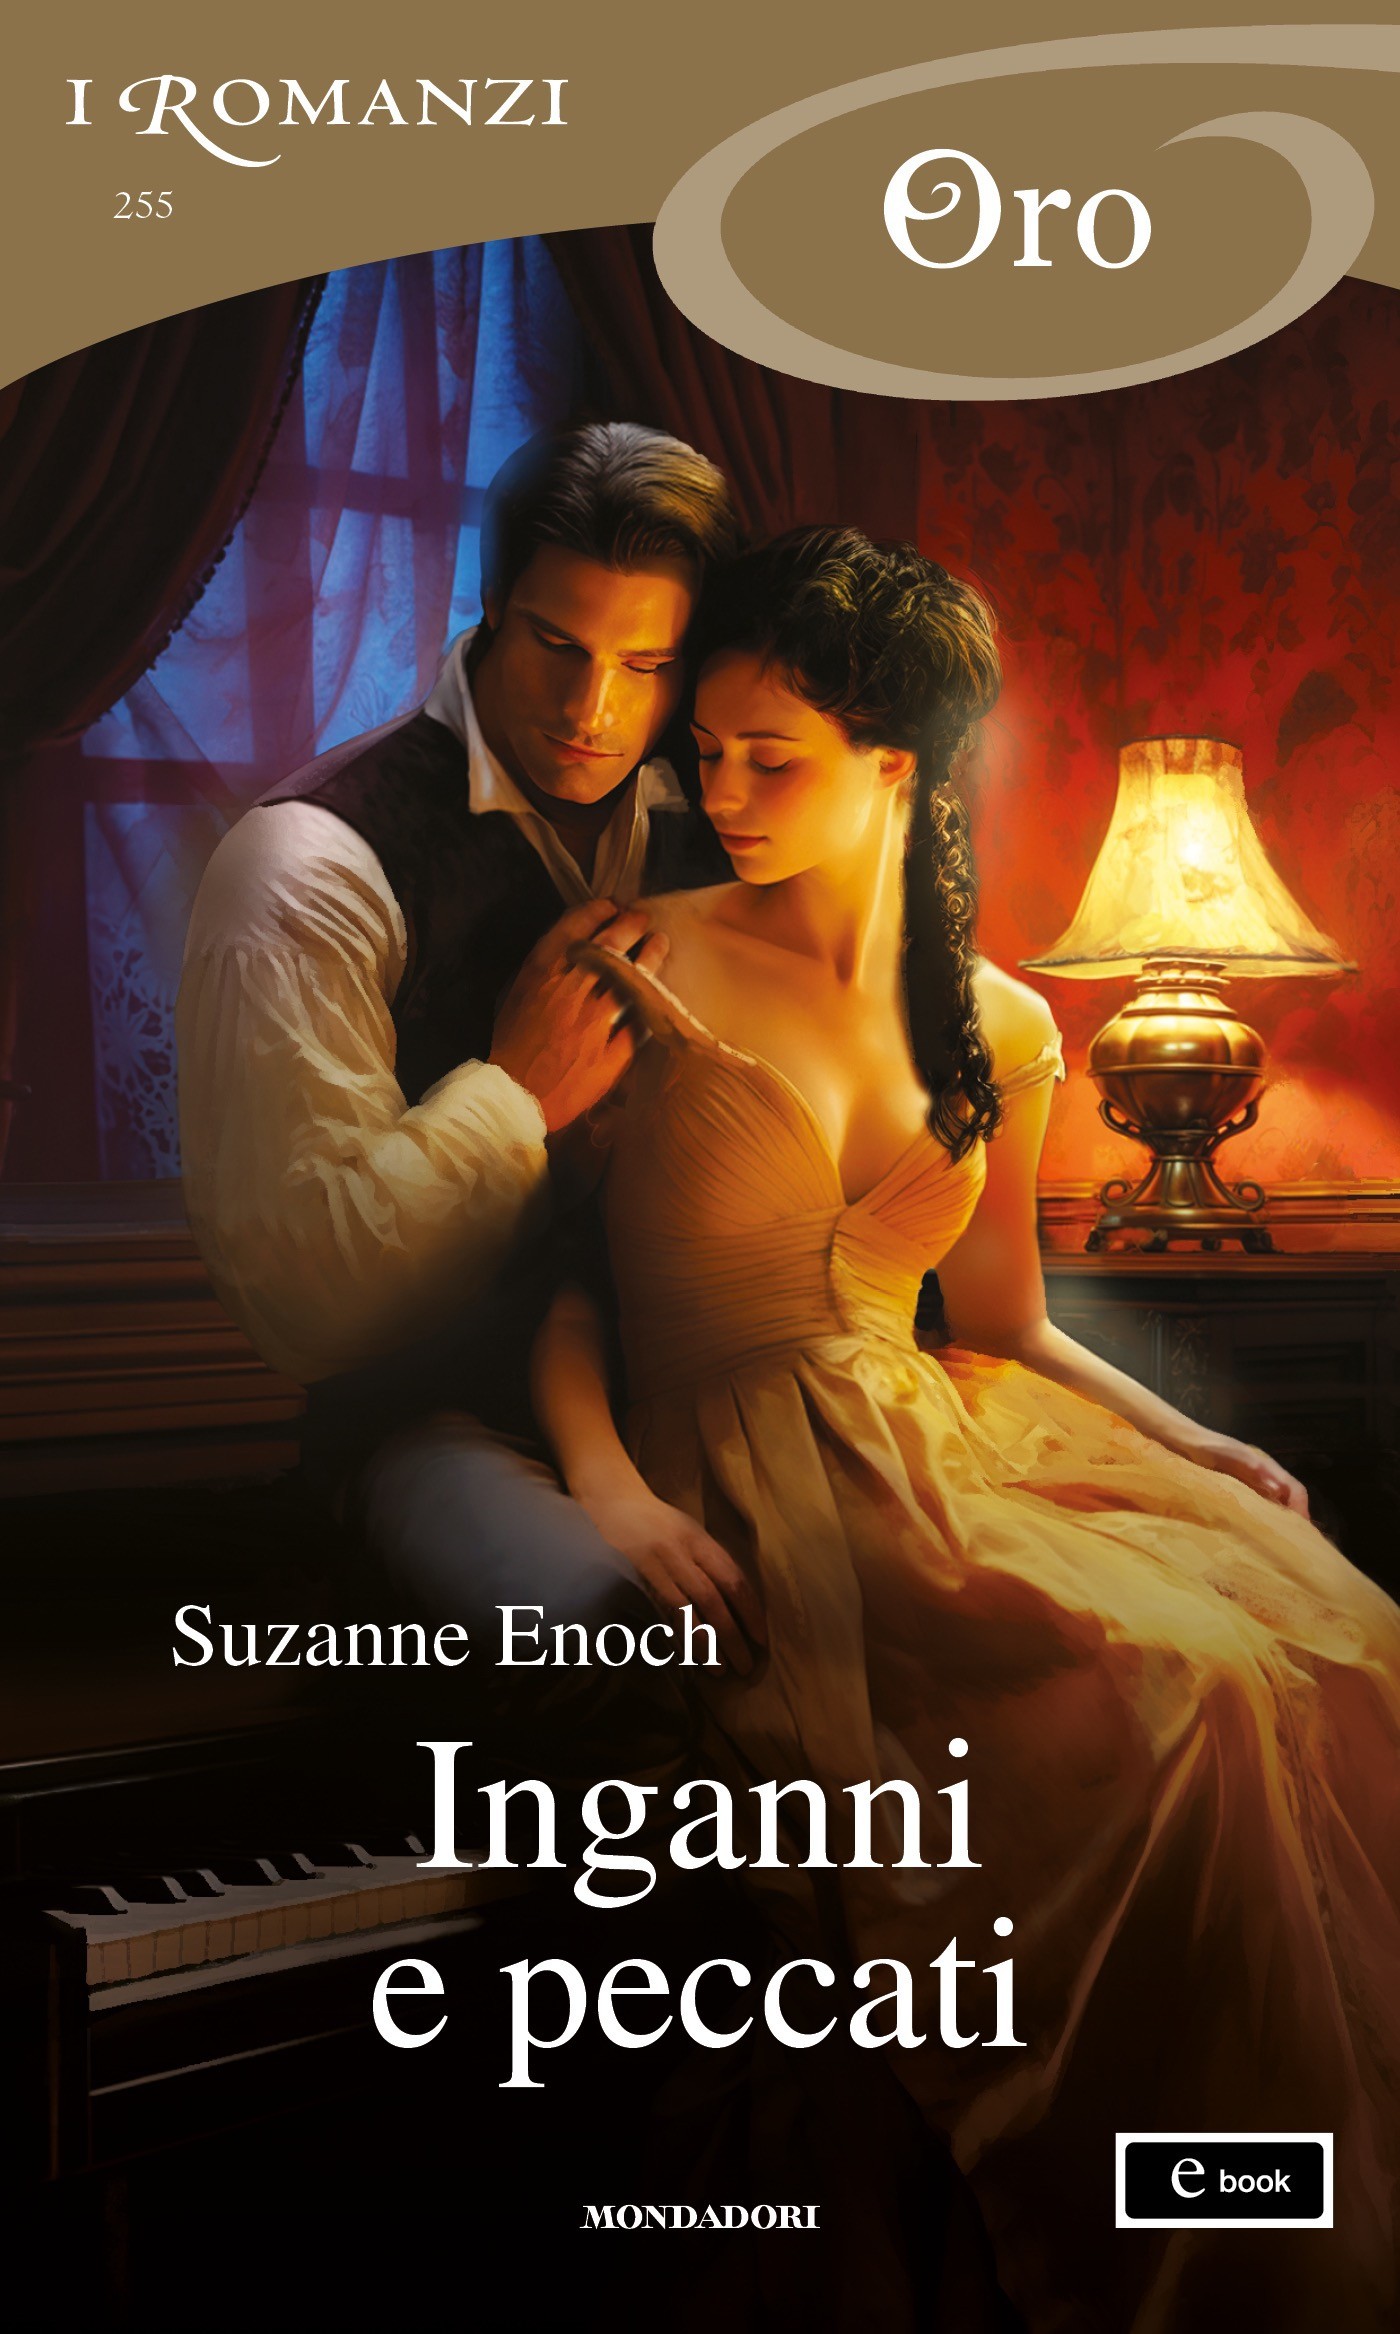 Inganni e peccati (I Romanzi Oro) - Librerie.coop